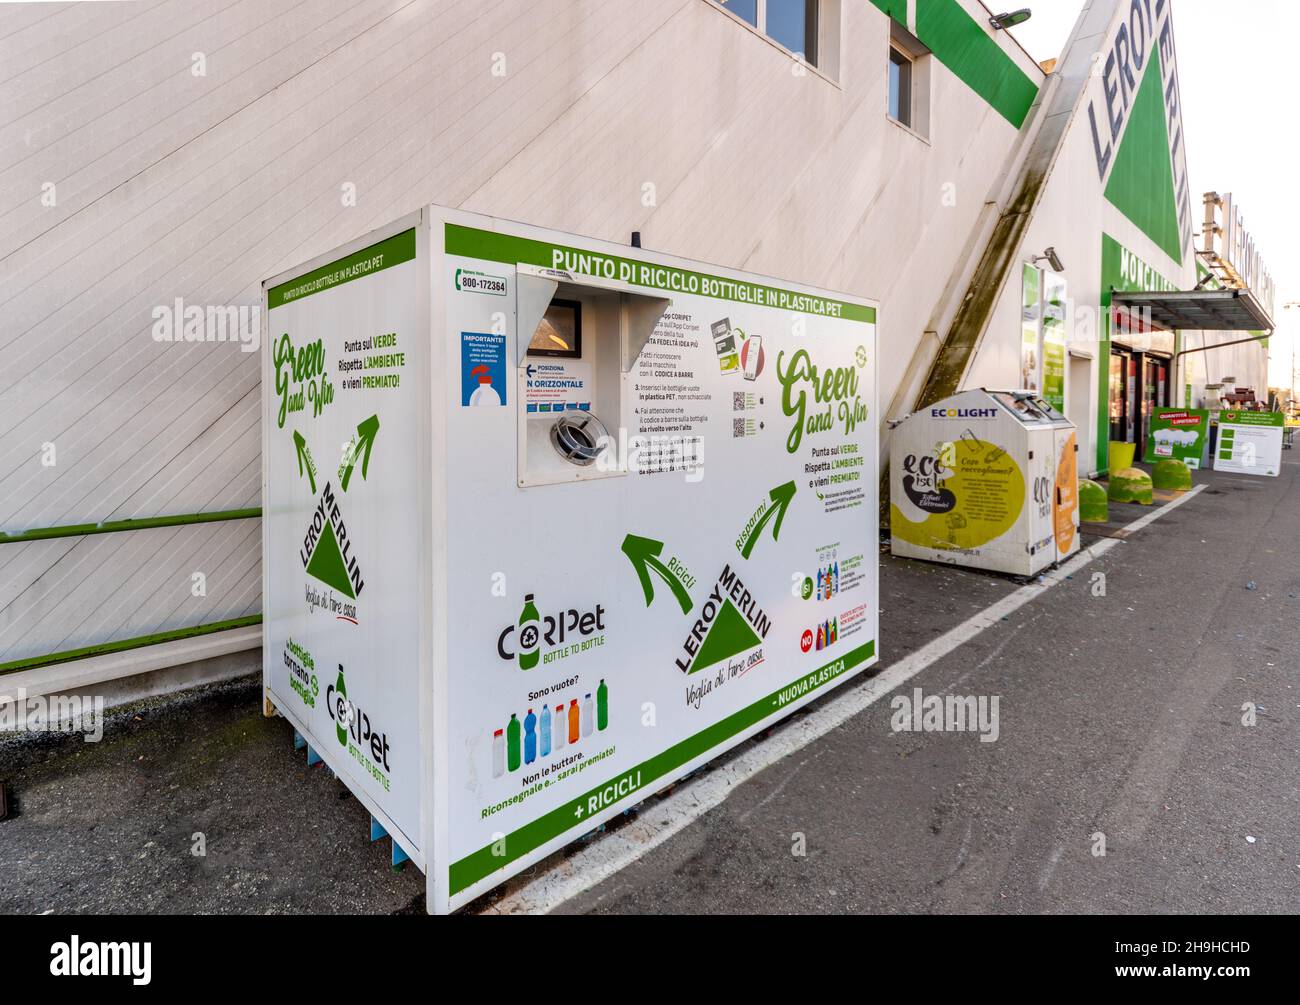 Monalieri, Turin, Italien - 6. Dezember 2021: Recyclingstelle für Plastikflaschen am Eingang des Einkaufszentrums Leroy Merlin Stockfoto